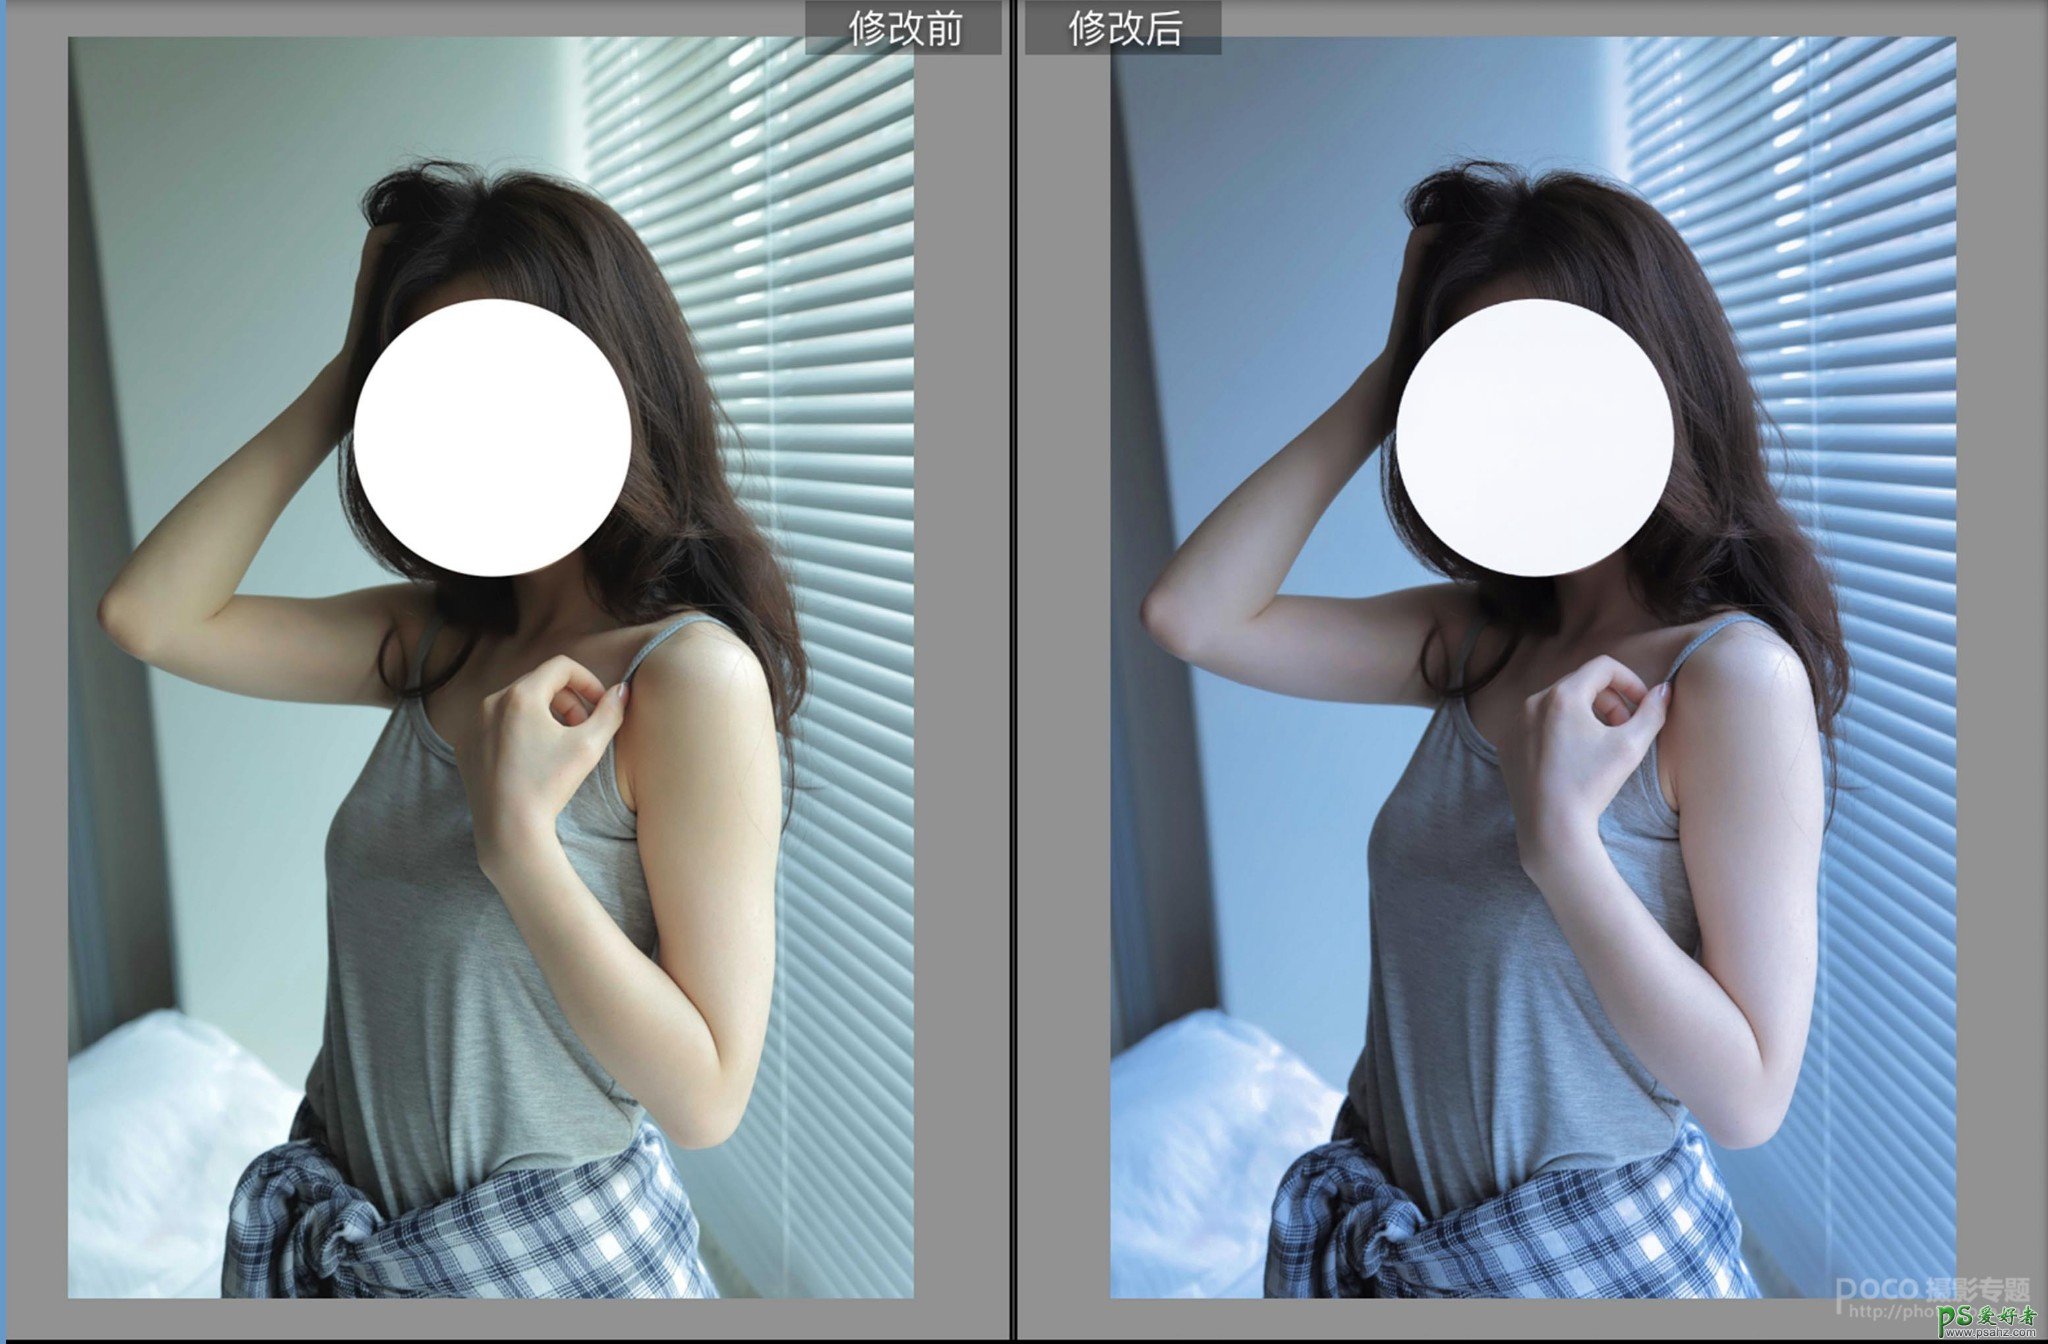 Photoshop给美女写真照调出通透的淡蓝色艺术效果，清新艺术照。